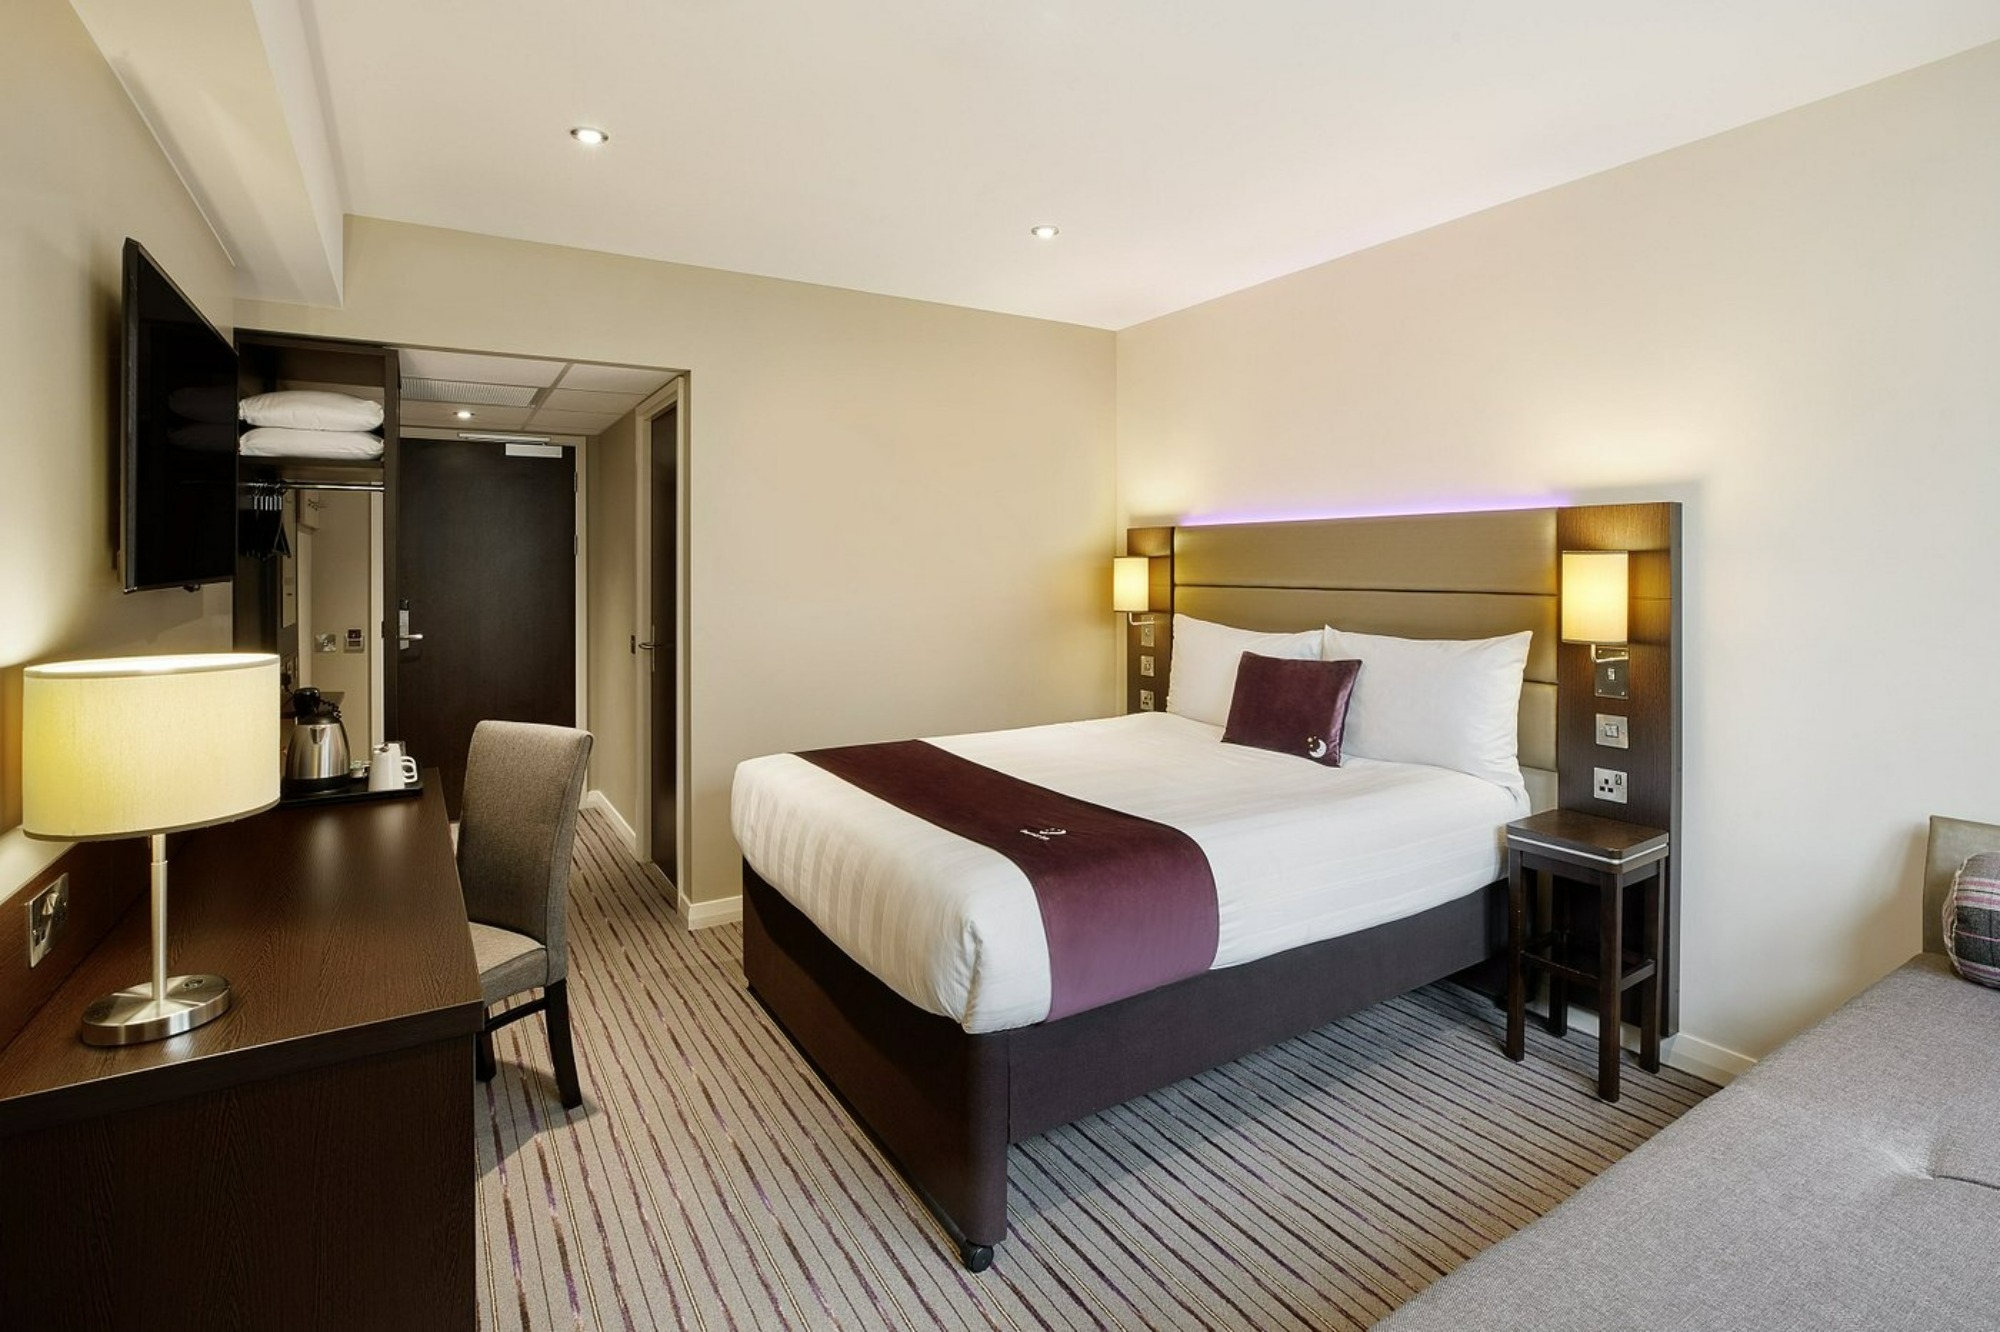 Premier Inn double bedroom